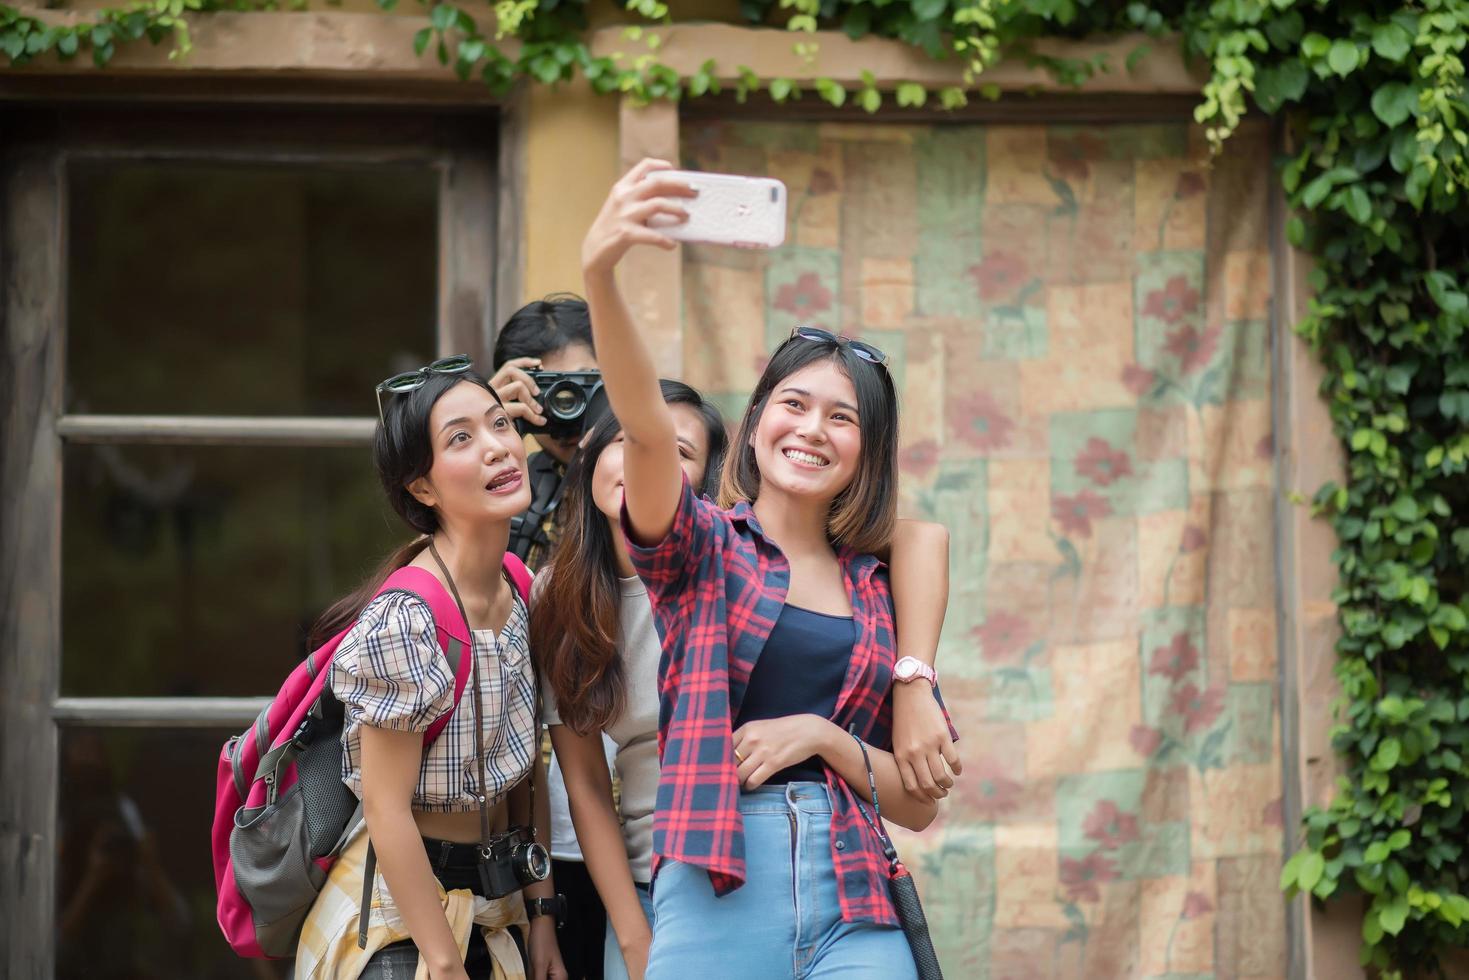 Groupe d'amis prenant un selfie dans une rue urbaine s'amusant ensemble photo